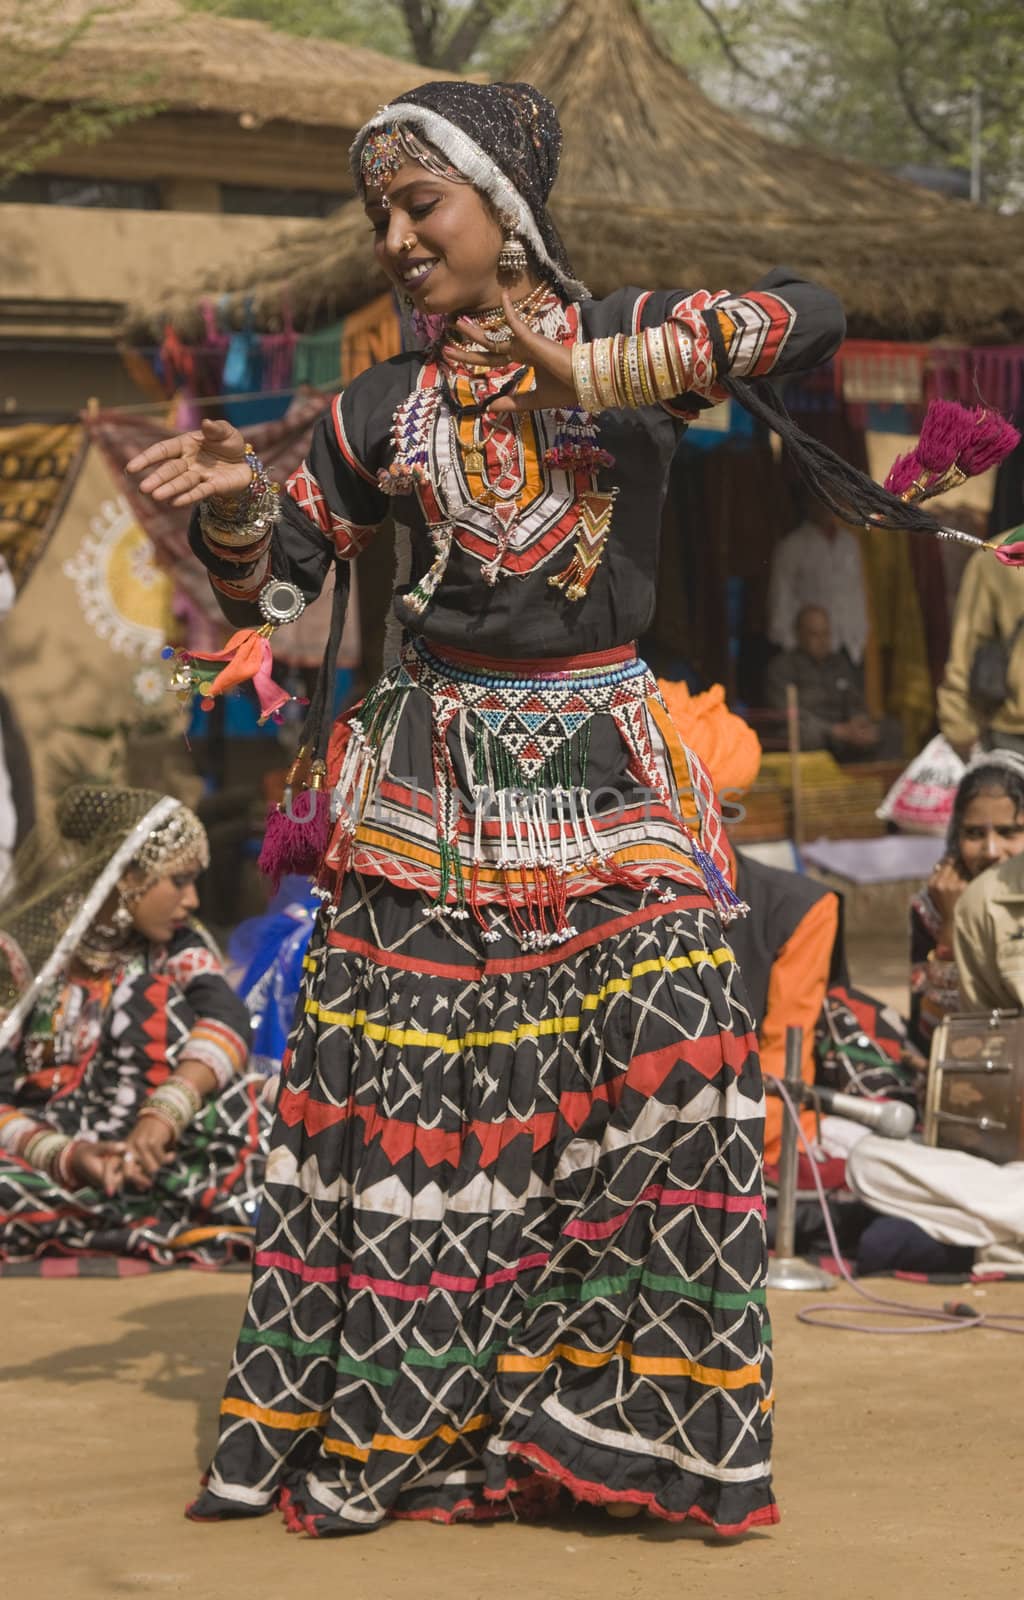 Indian Culture by JeremyRichards